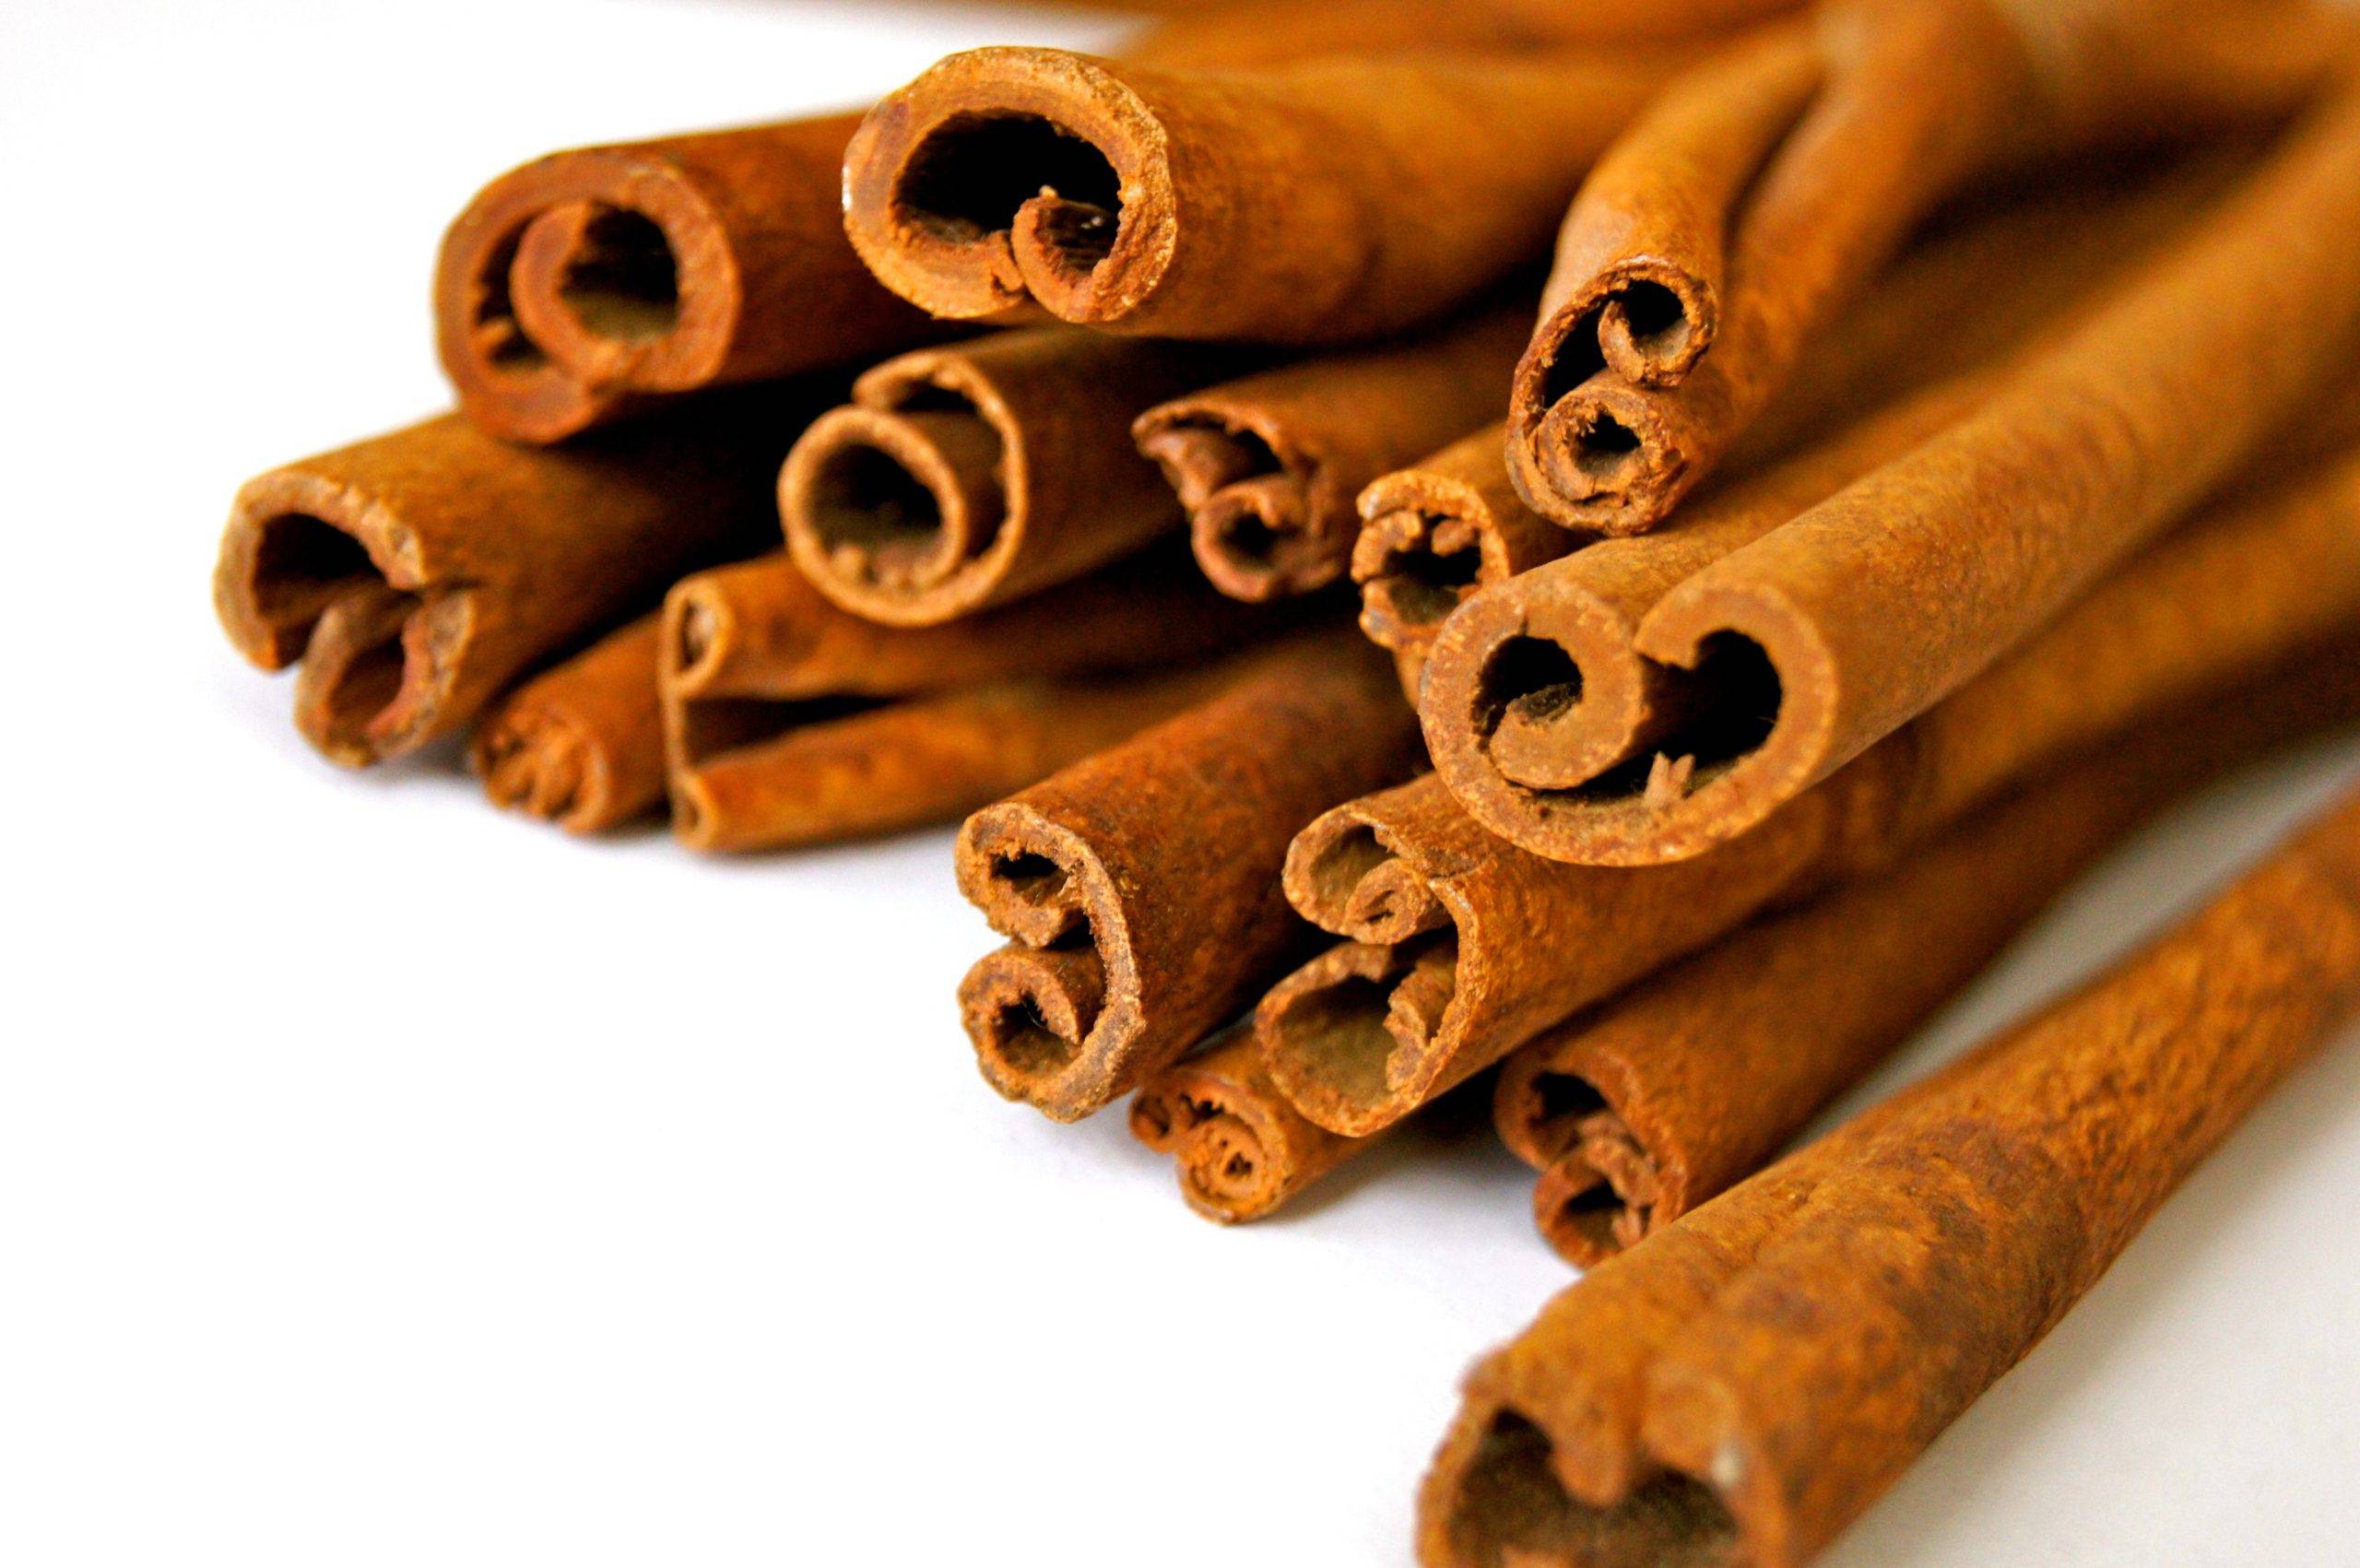 pile of cinnamon sticks